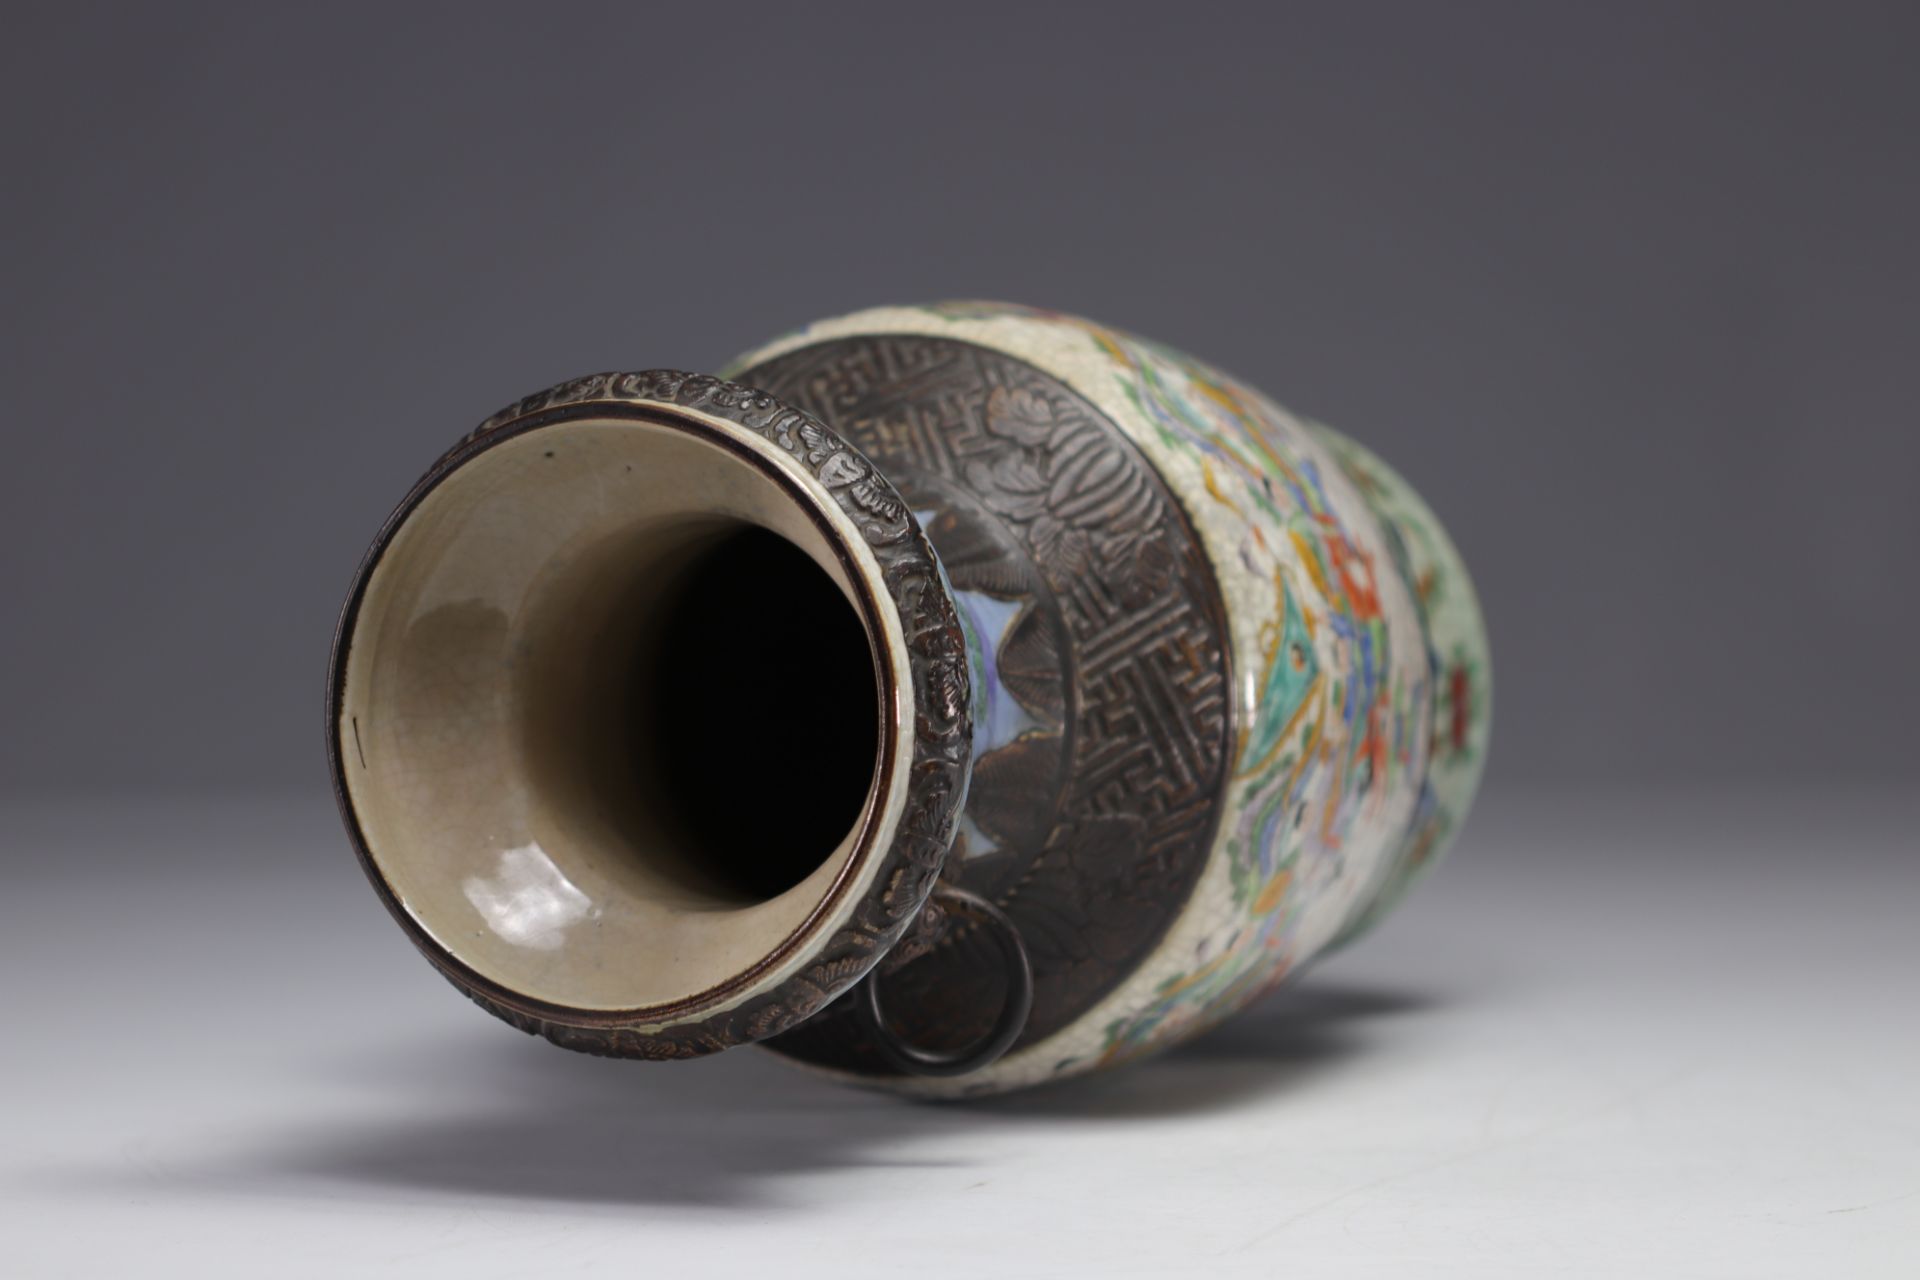 China - Nanking porcelain vase with battle scene decoration, 19th century. - Image 5 of 6